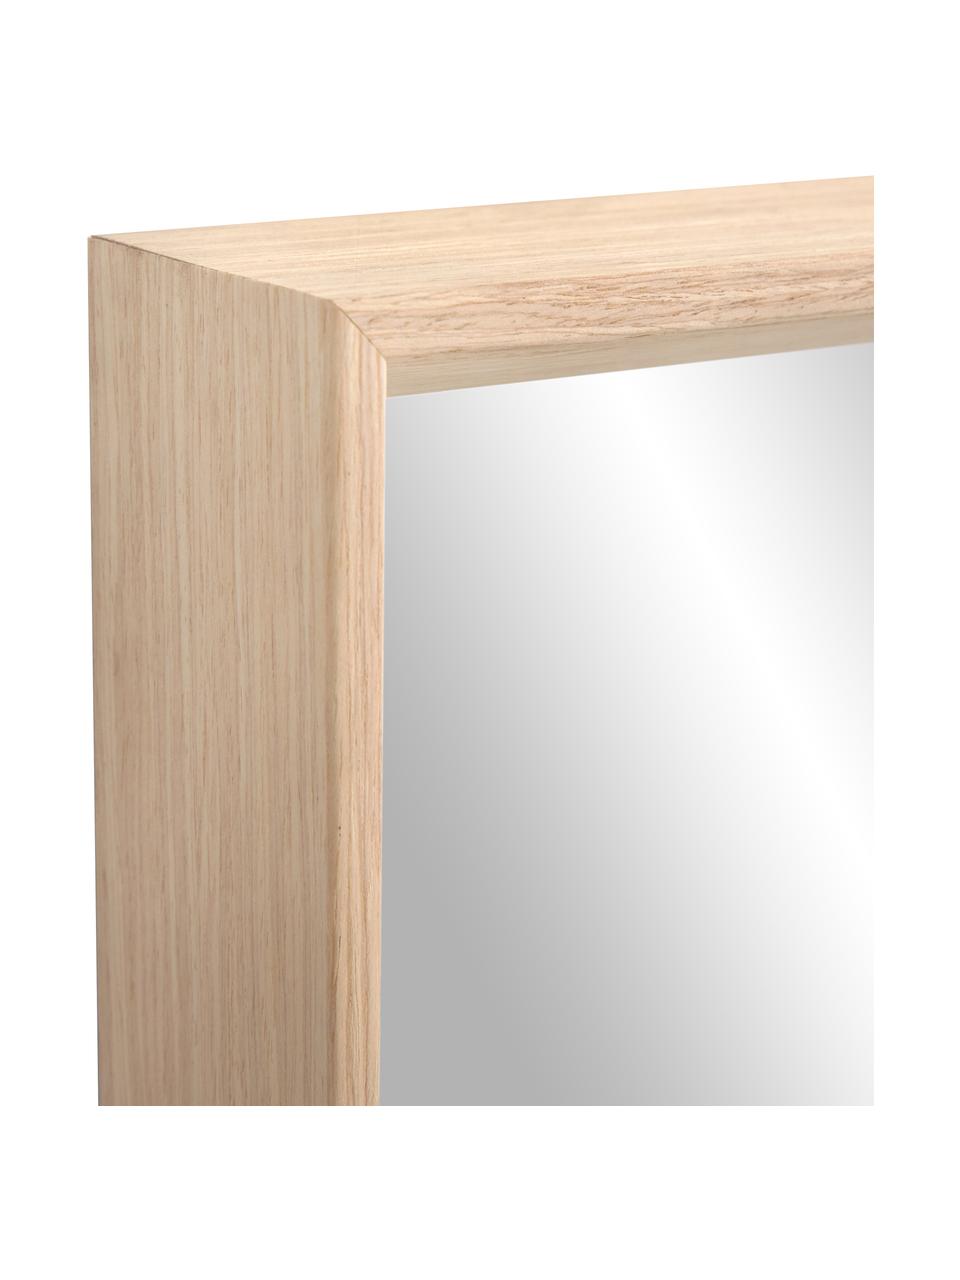 Specchio rettangolare pendente con cornice in legno beige Nerina, Cornice: legno, Superficie dello specchio: lastra di vetro, Beige, Larg. 80 x Alt. 180 cm